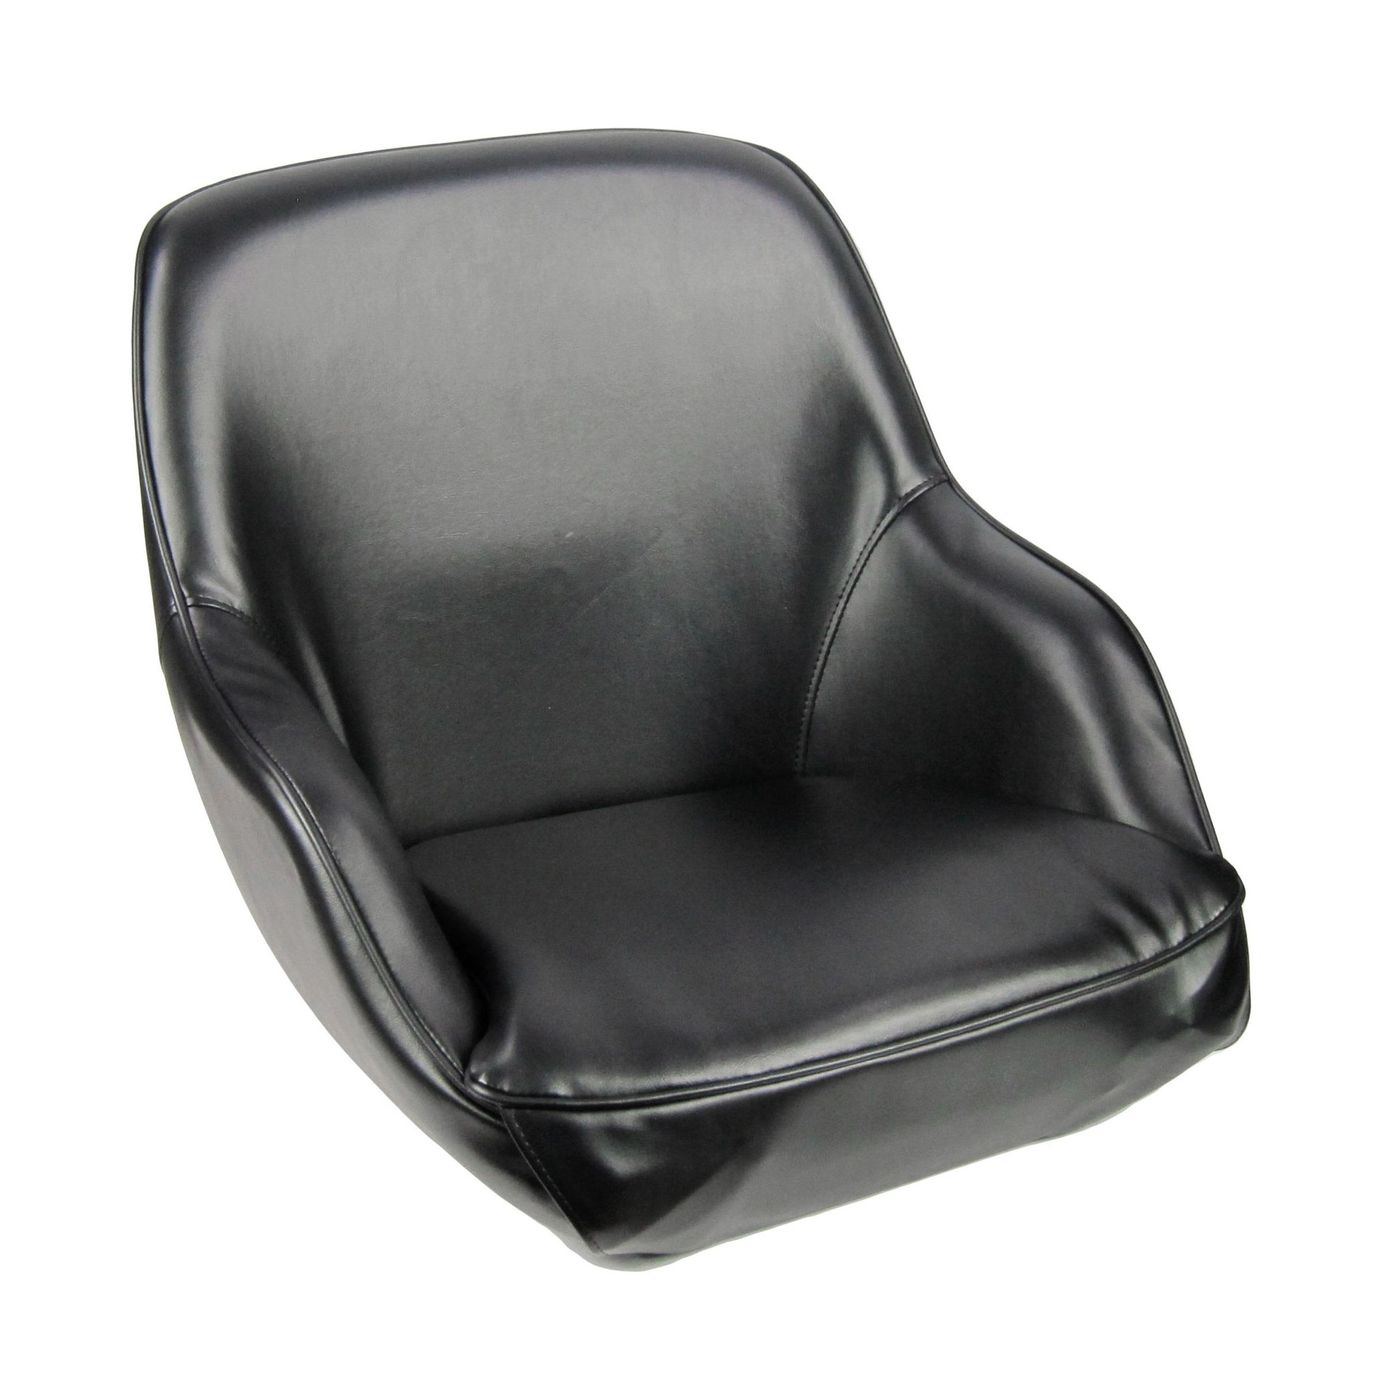 Кресло ADMIRAL мягкое, материал черный винил 1061420990 сиденье мягкое bass boat seat серый черный синий 75132gcb